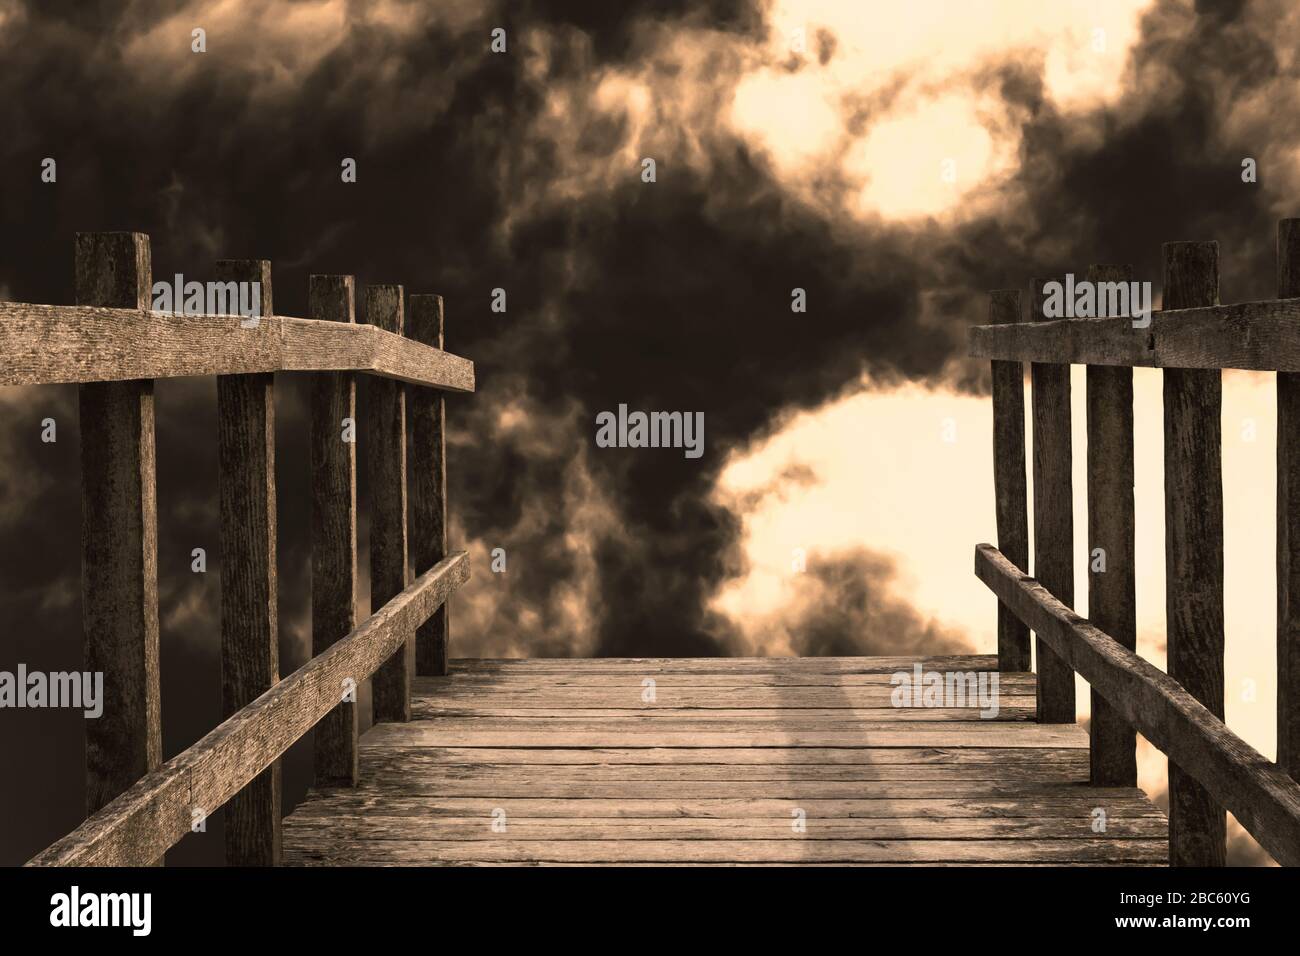 El final de un puente de madera que conduce hacia una gota. Las nubes oscuras y llenas de humo y la luz brillante dan una sensación de fuego del infierno y de apocalíptica ruina. Foto de stock